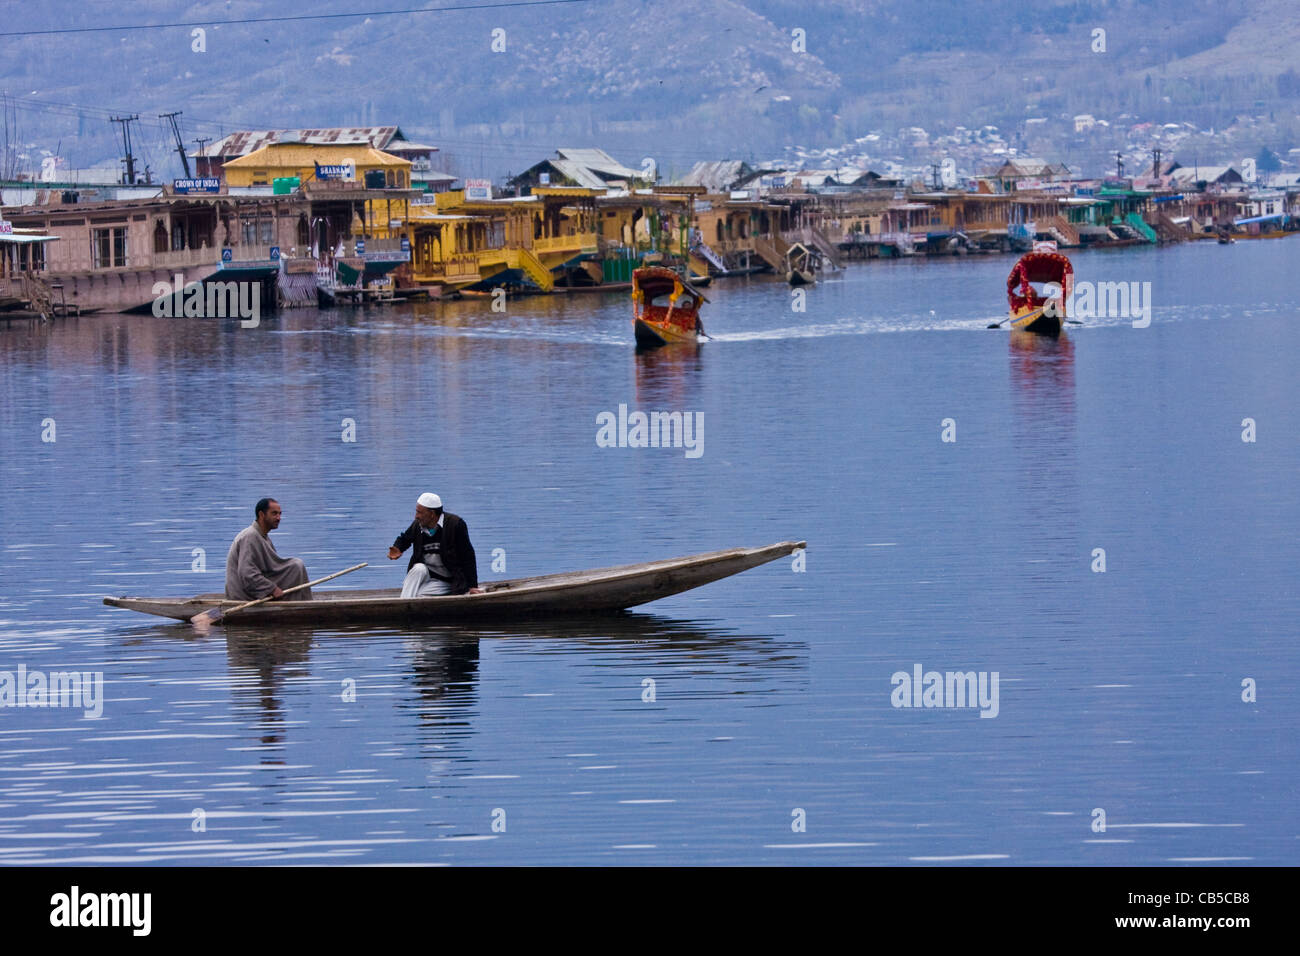 Scène quotidienne de la vie du lac Dal, Srinagar, Cachemire, Inde, avec les villageois dans leur canoë/bateau/bateau de campagne/shikara qui fait le trajet entre le lac. Banque D'Images